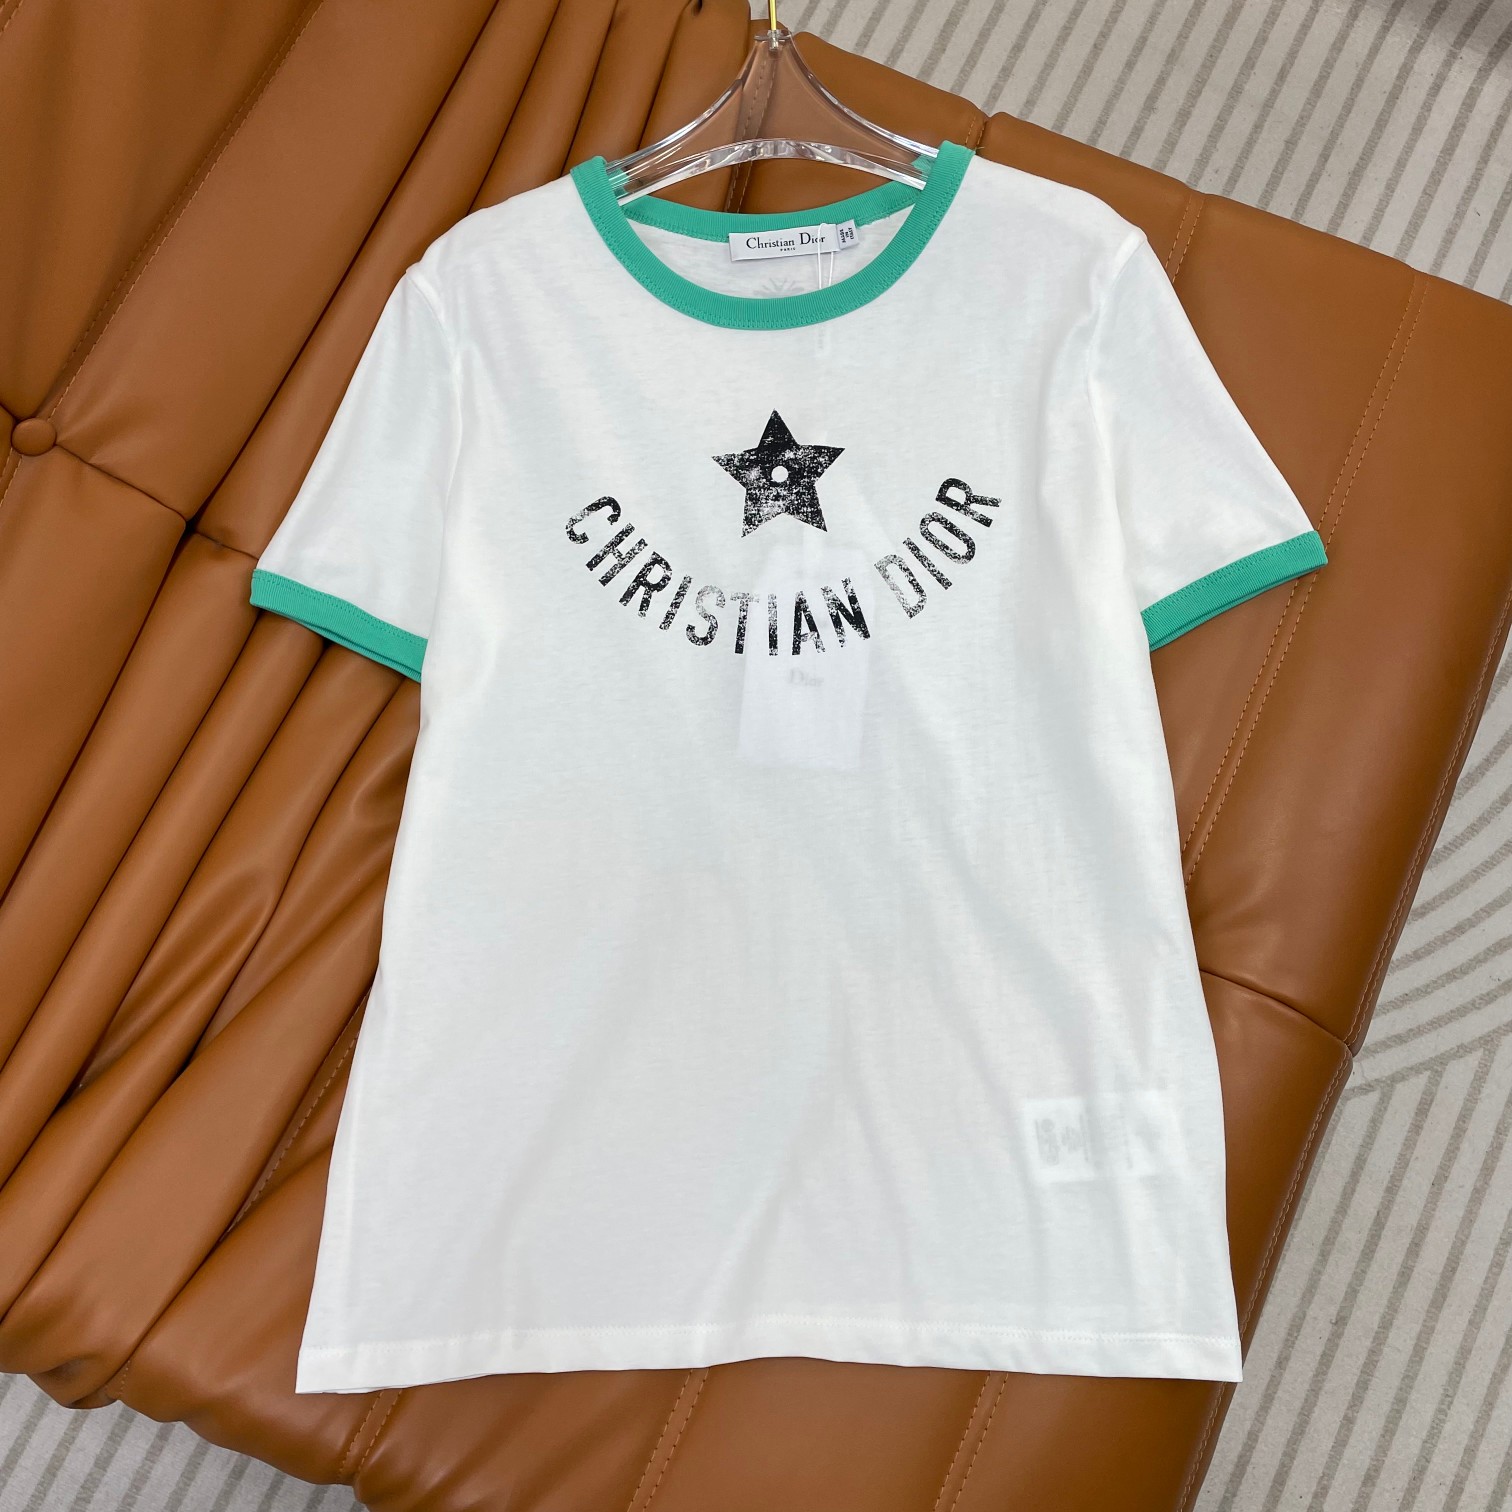 Dior Kleding T-Shirt Wit Afdrukken Katoen Herfstcollectie Korte mouw